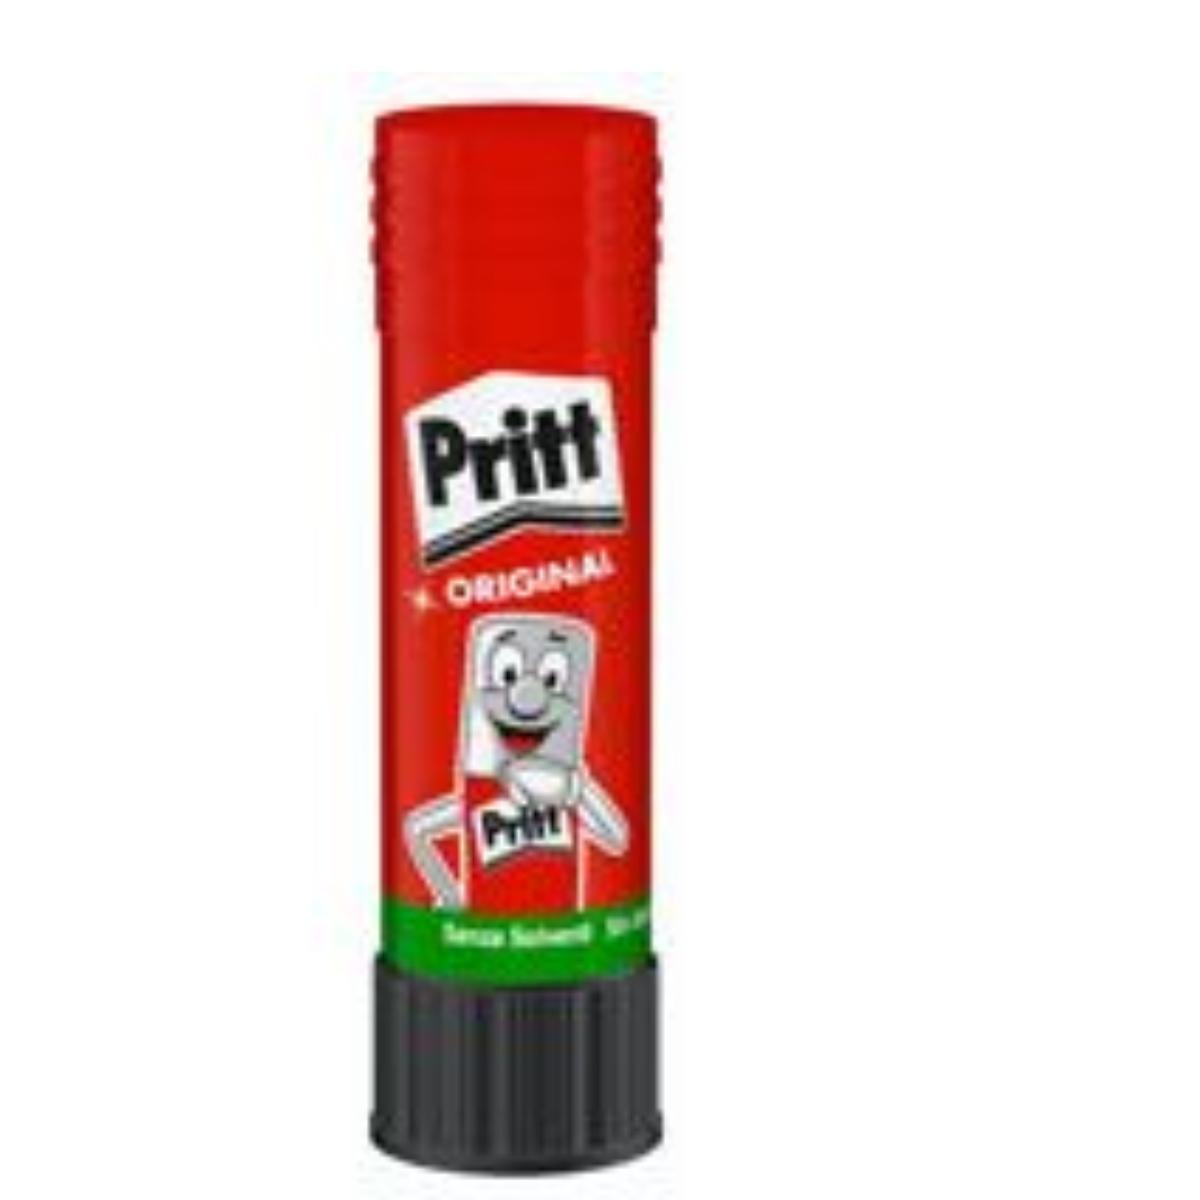 Pritt colla stick 818/819 pk 43gr.